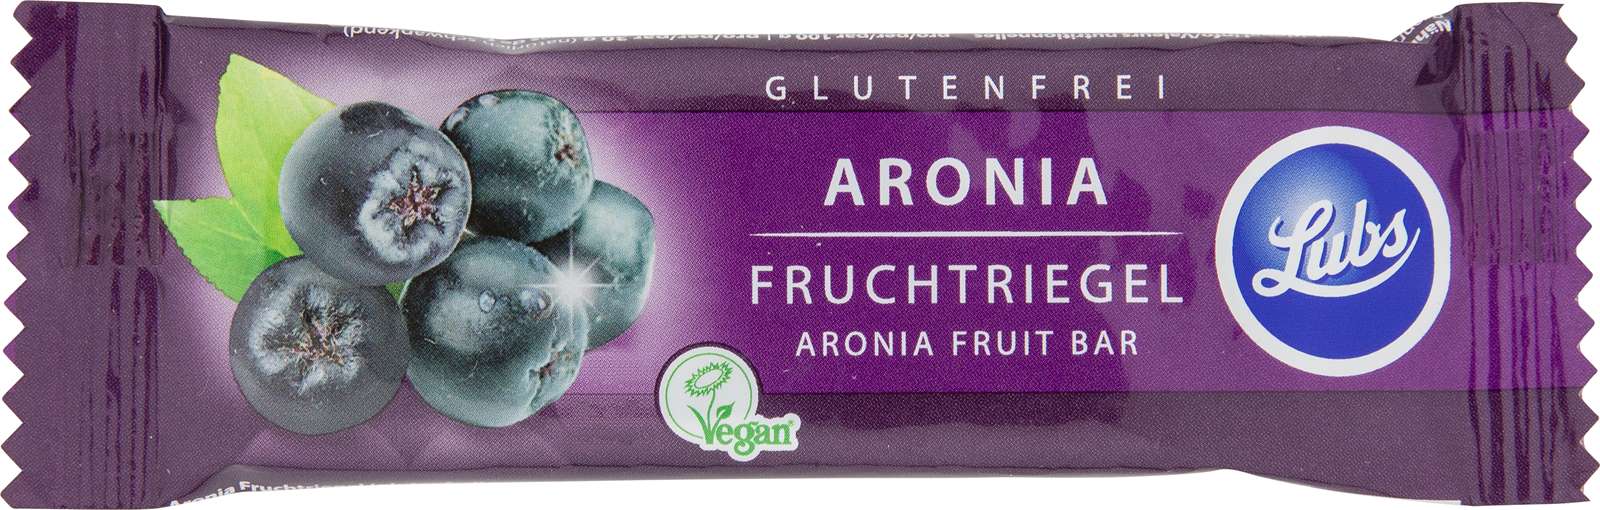 Lubs Fruchtriegel Aronia Glutenfrei 30g